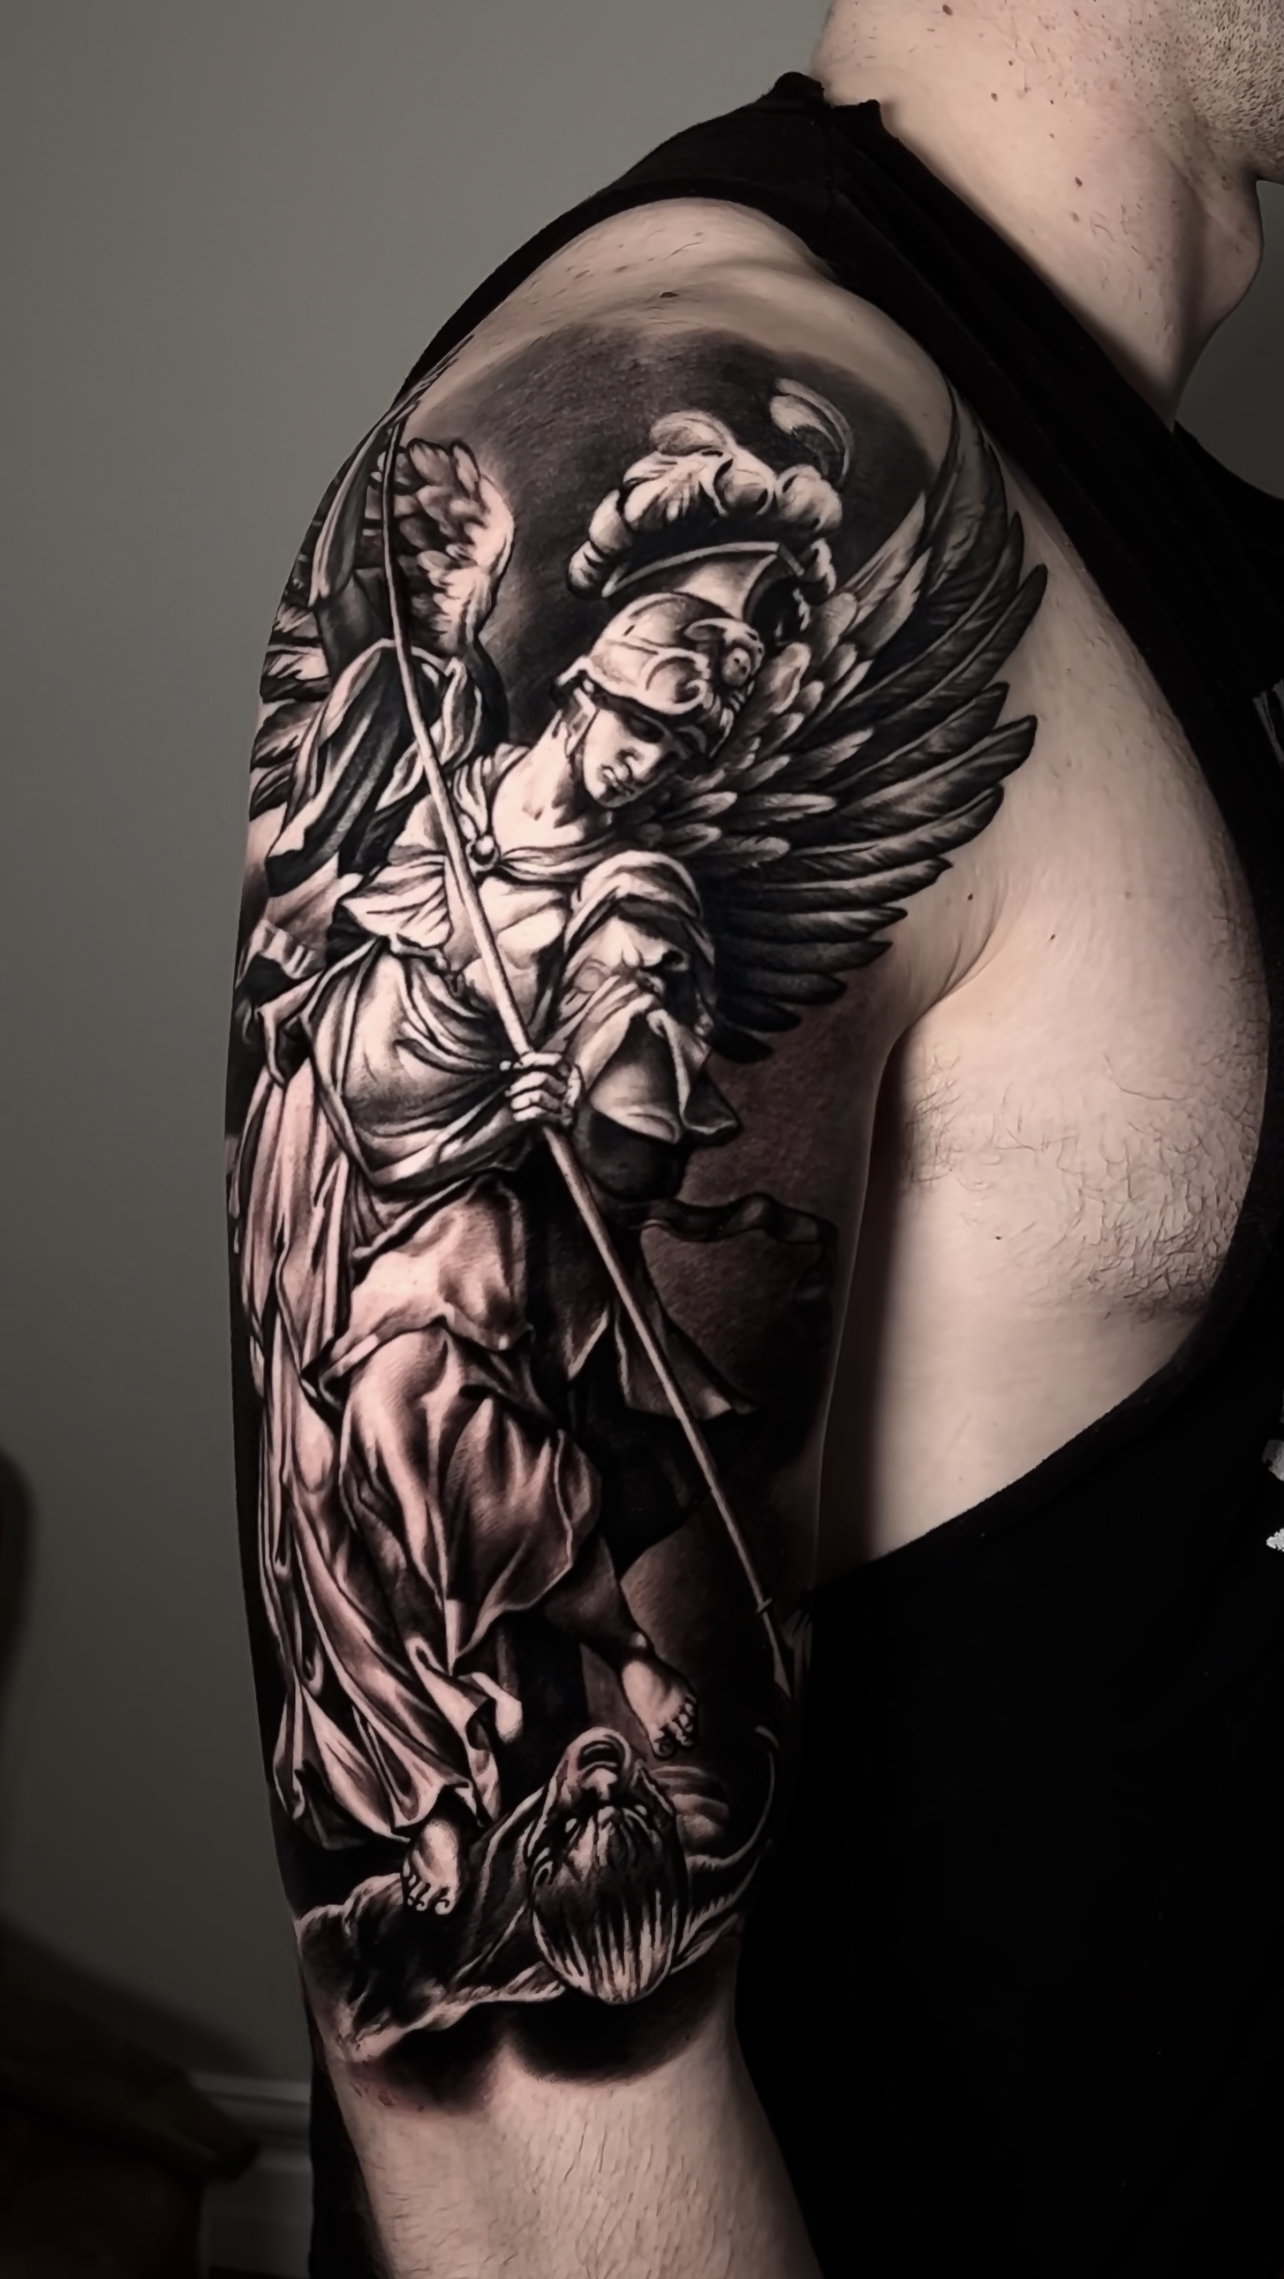 Amazing St. Michael's angel good vs. evil tattoo by Eugene Novohatsky  @novohatskytattoo ! @inkedmag @worldofartists @inksav @gq @ink | Instagram